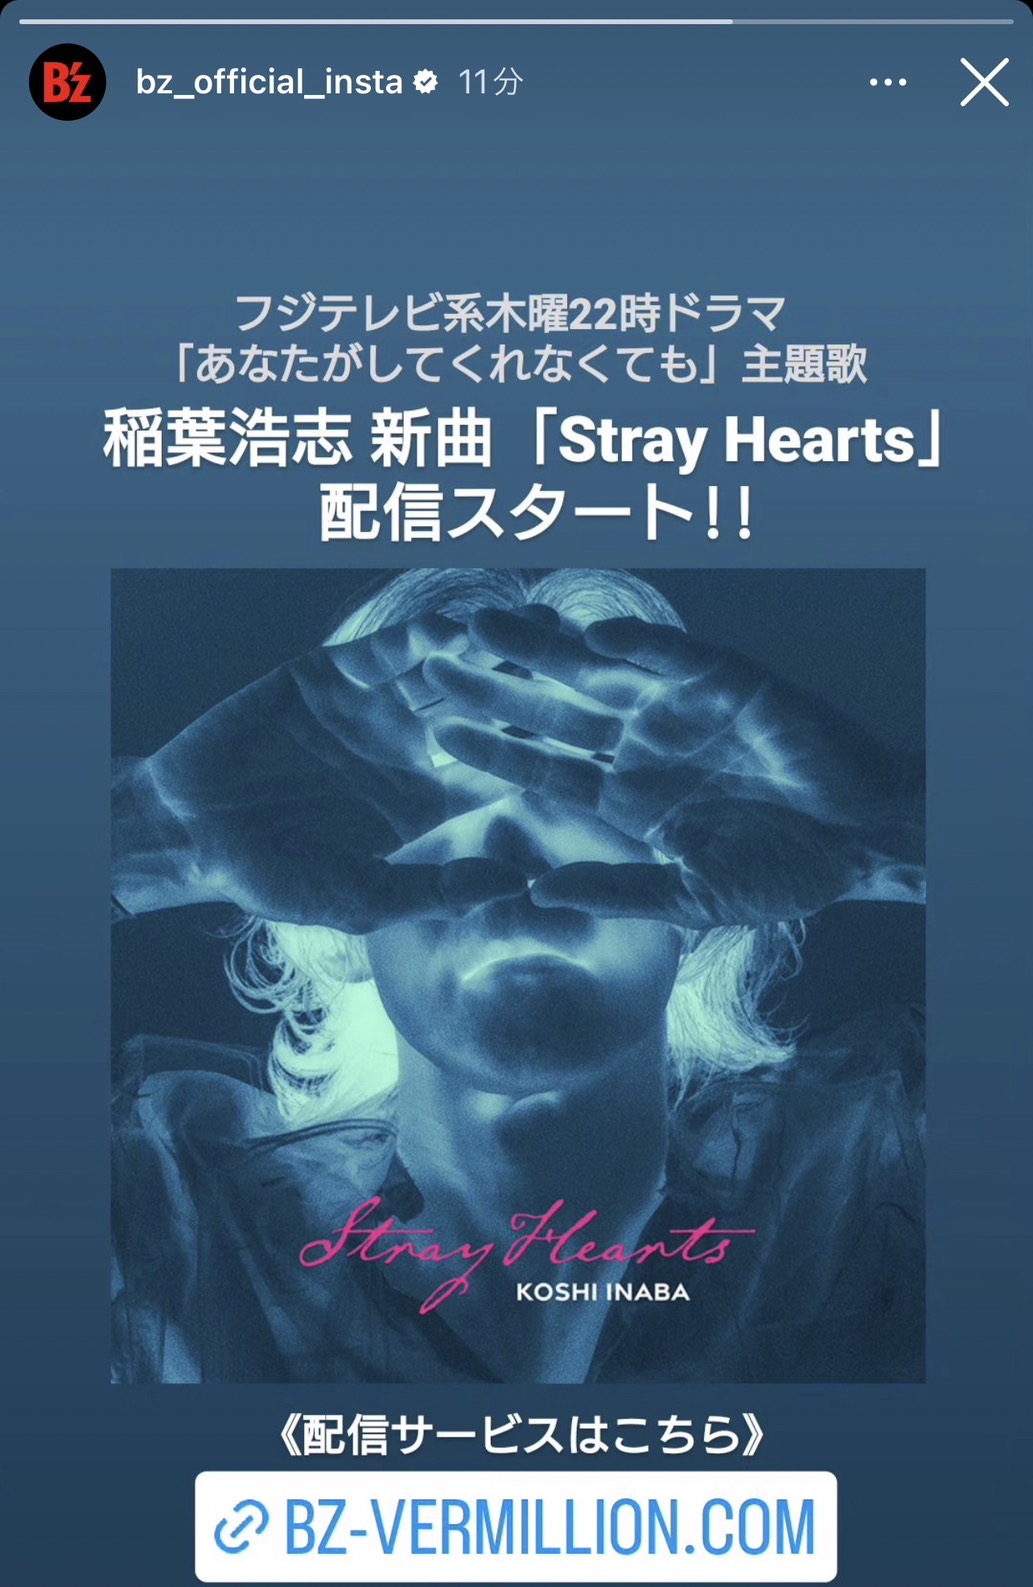 稲葉浩志「Stray Hearts」のリリースを告げるB'z公式Instagramのストーリーズ投稿